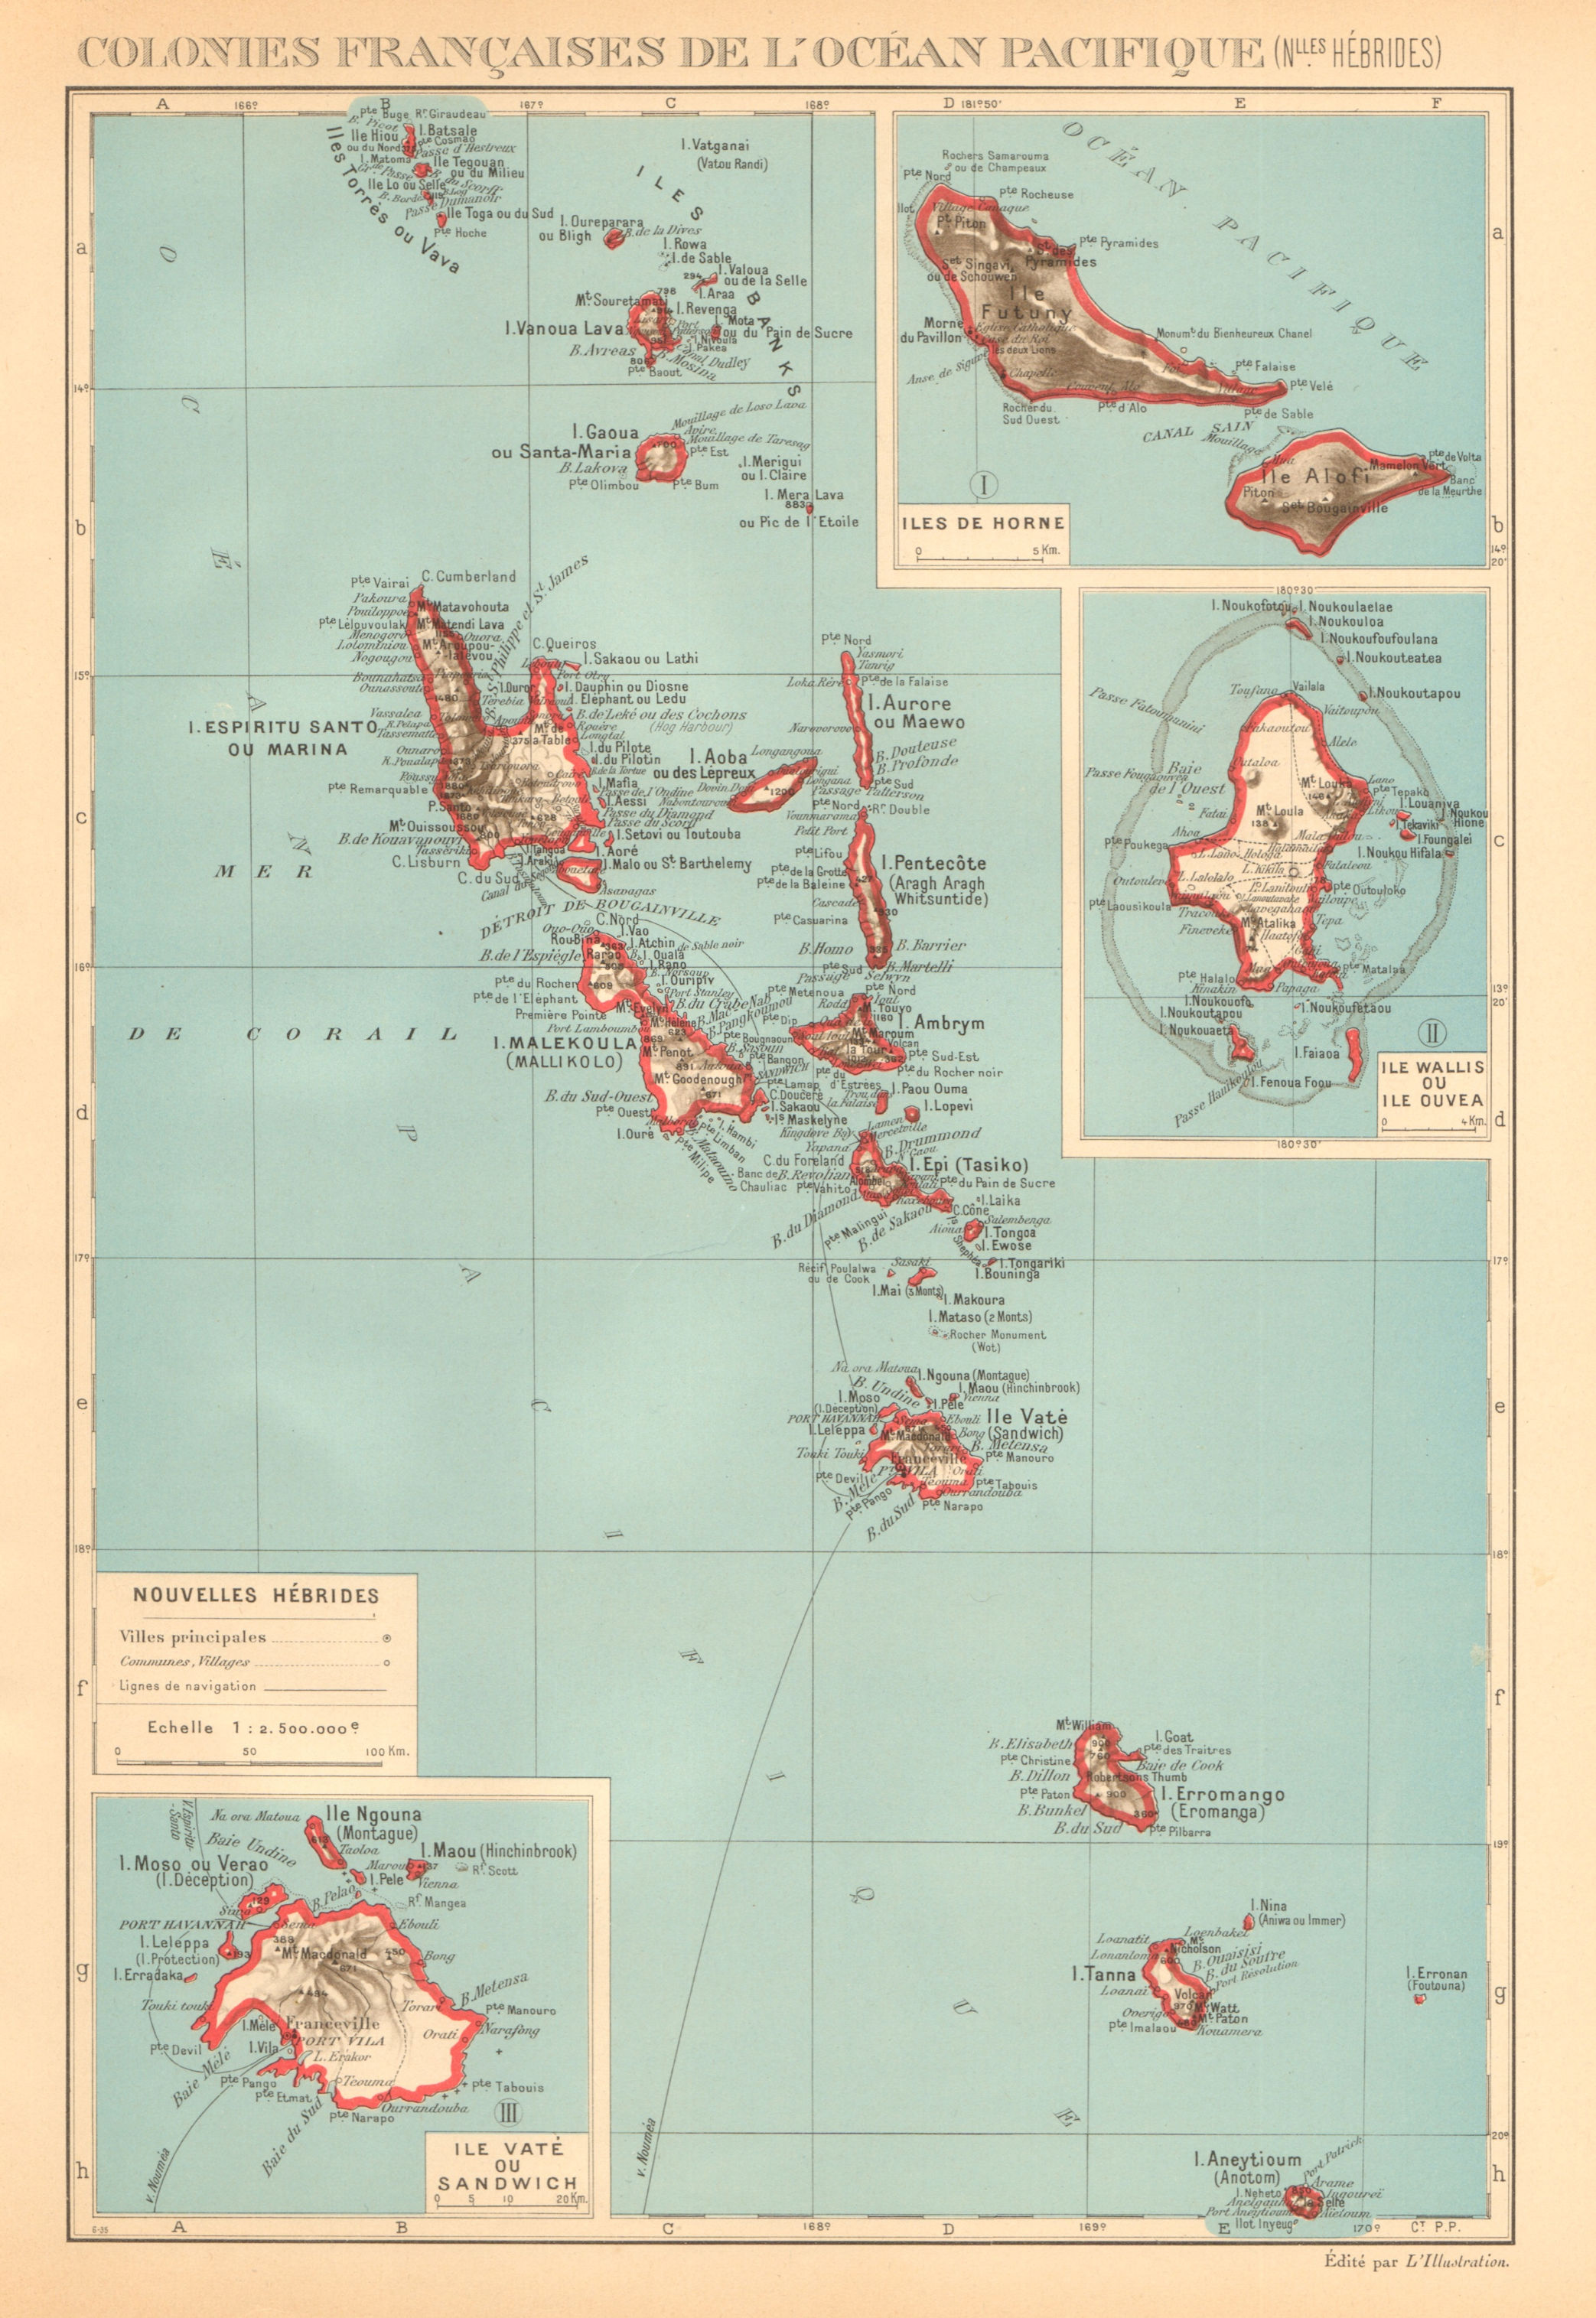 COLONIAL VANUATU. Nouvelles/New Hebrides. Efate Wallis & Futuna. Uvea 1938 map